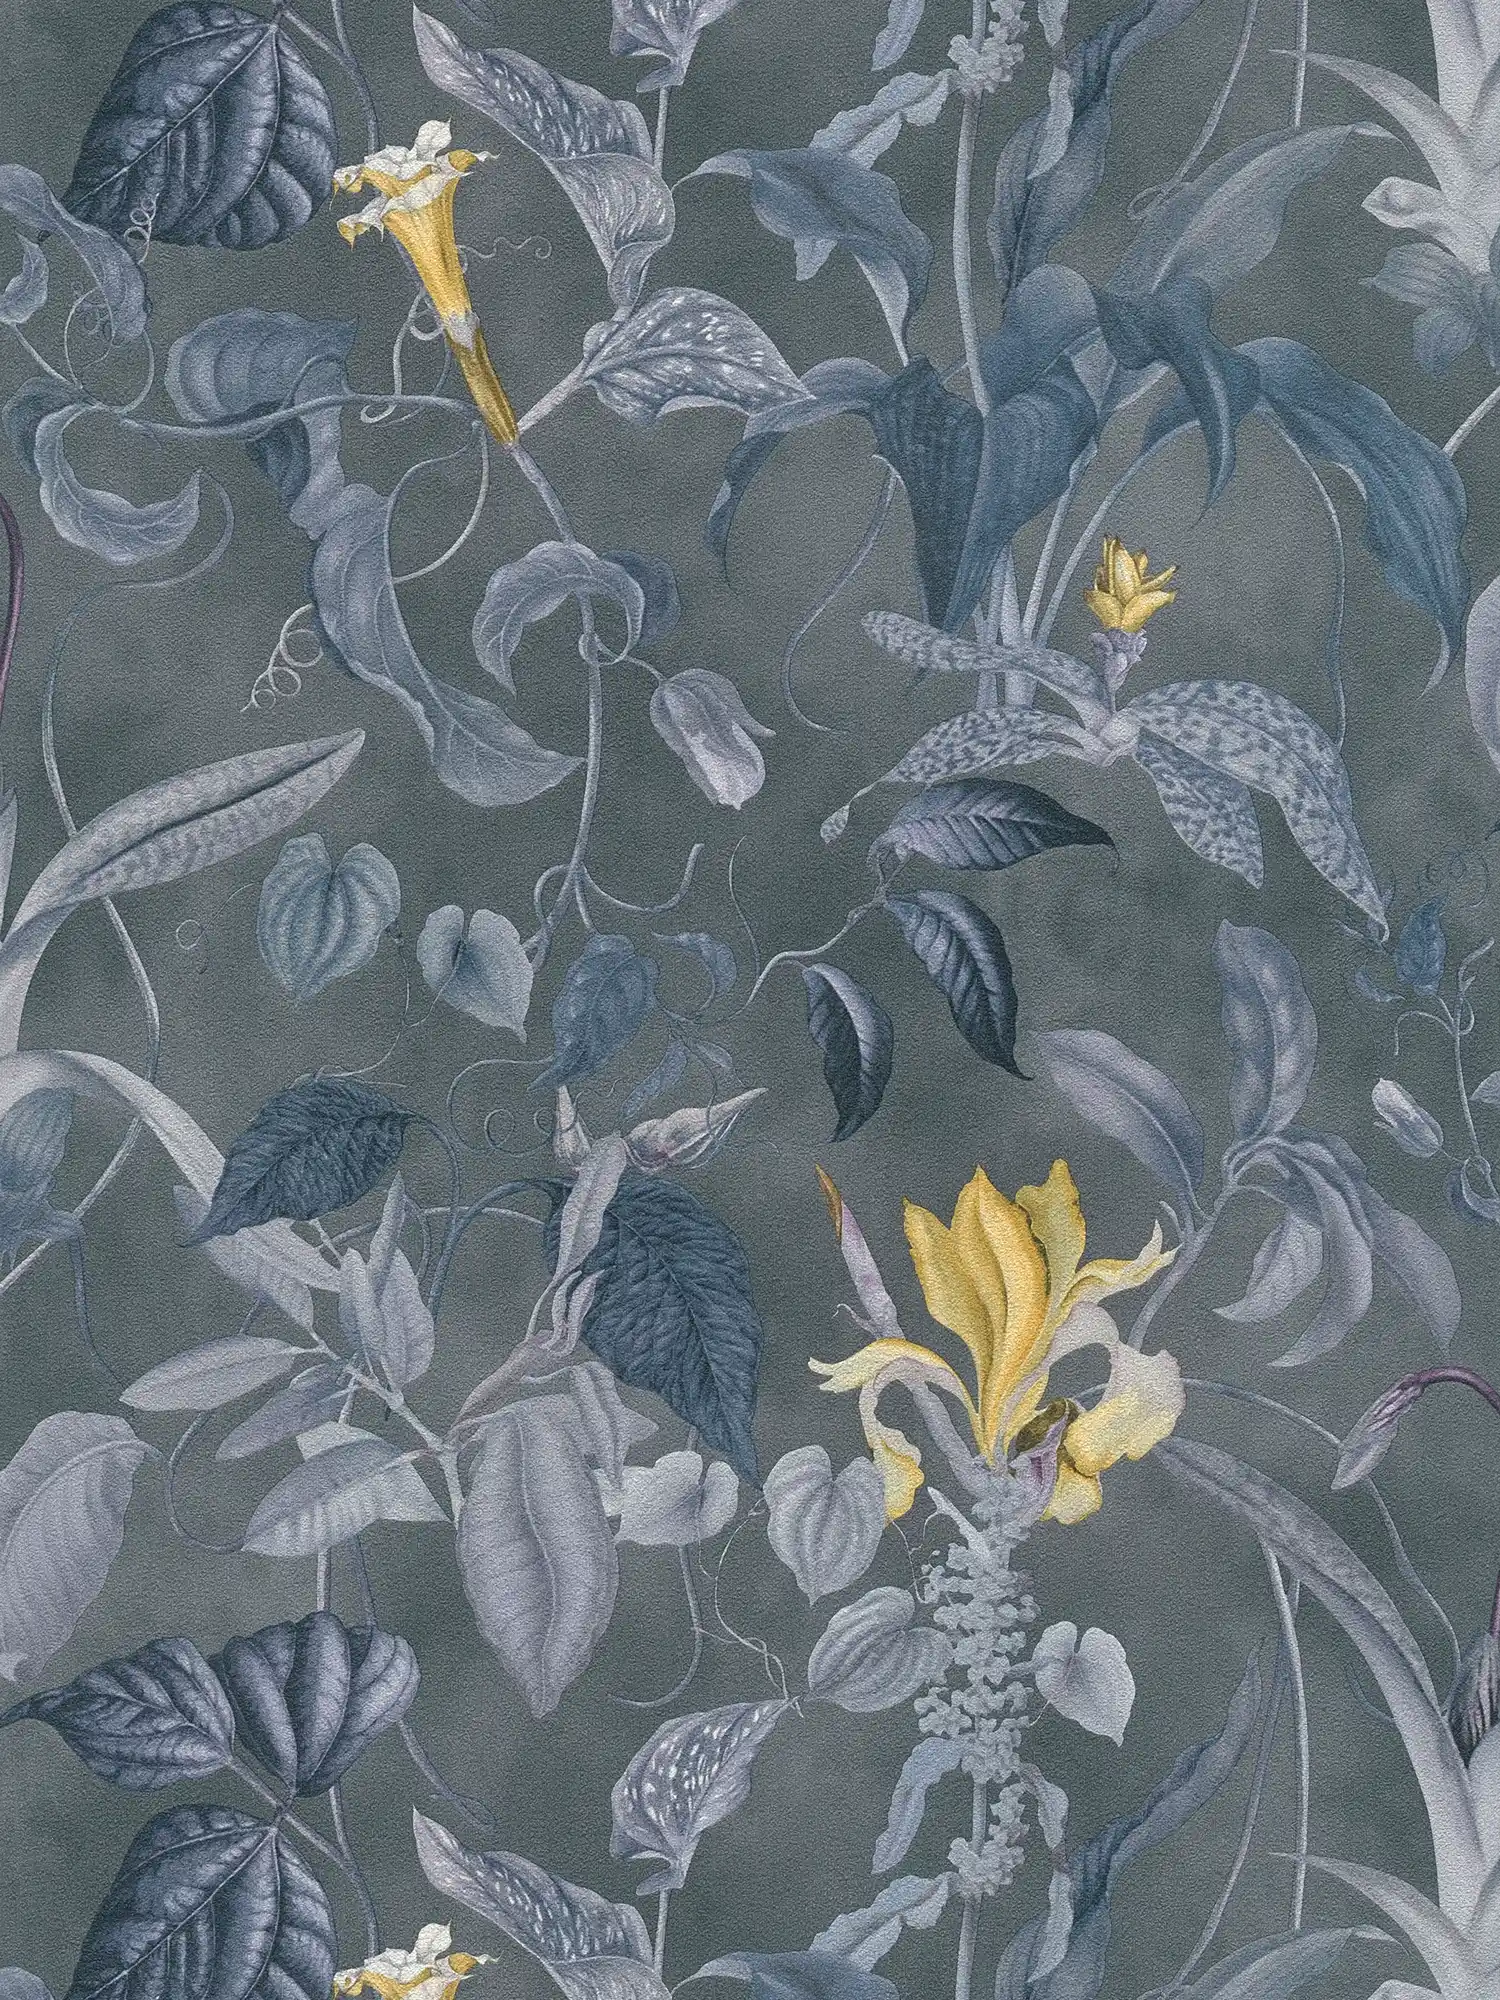 Tropisch bloemenbehang grijs-blauw, Design by MICHALSKY
